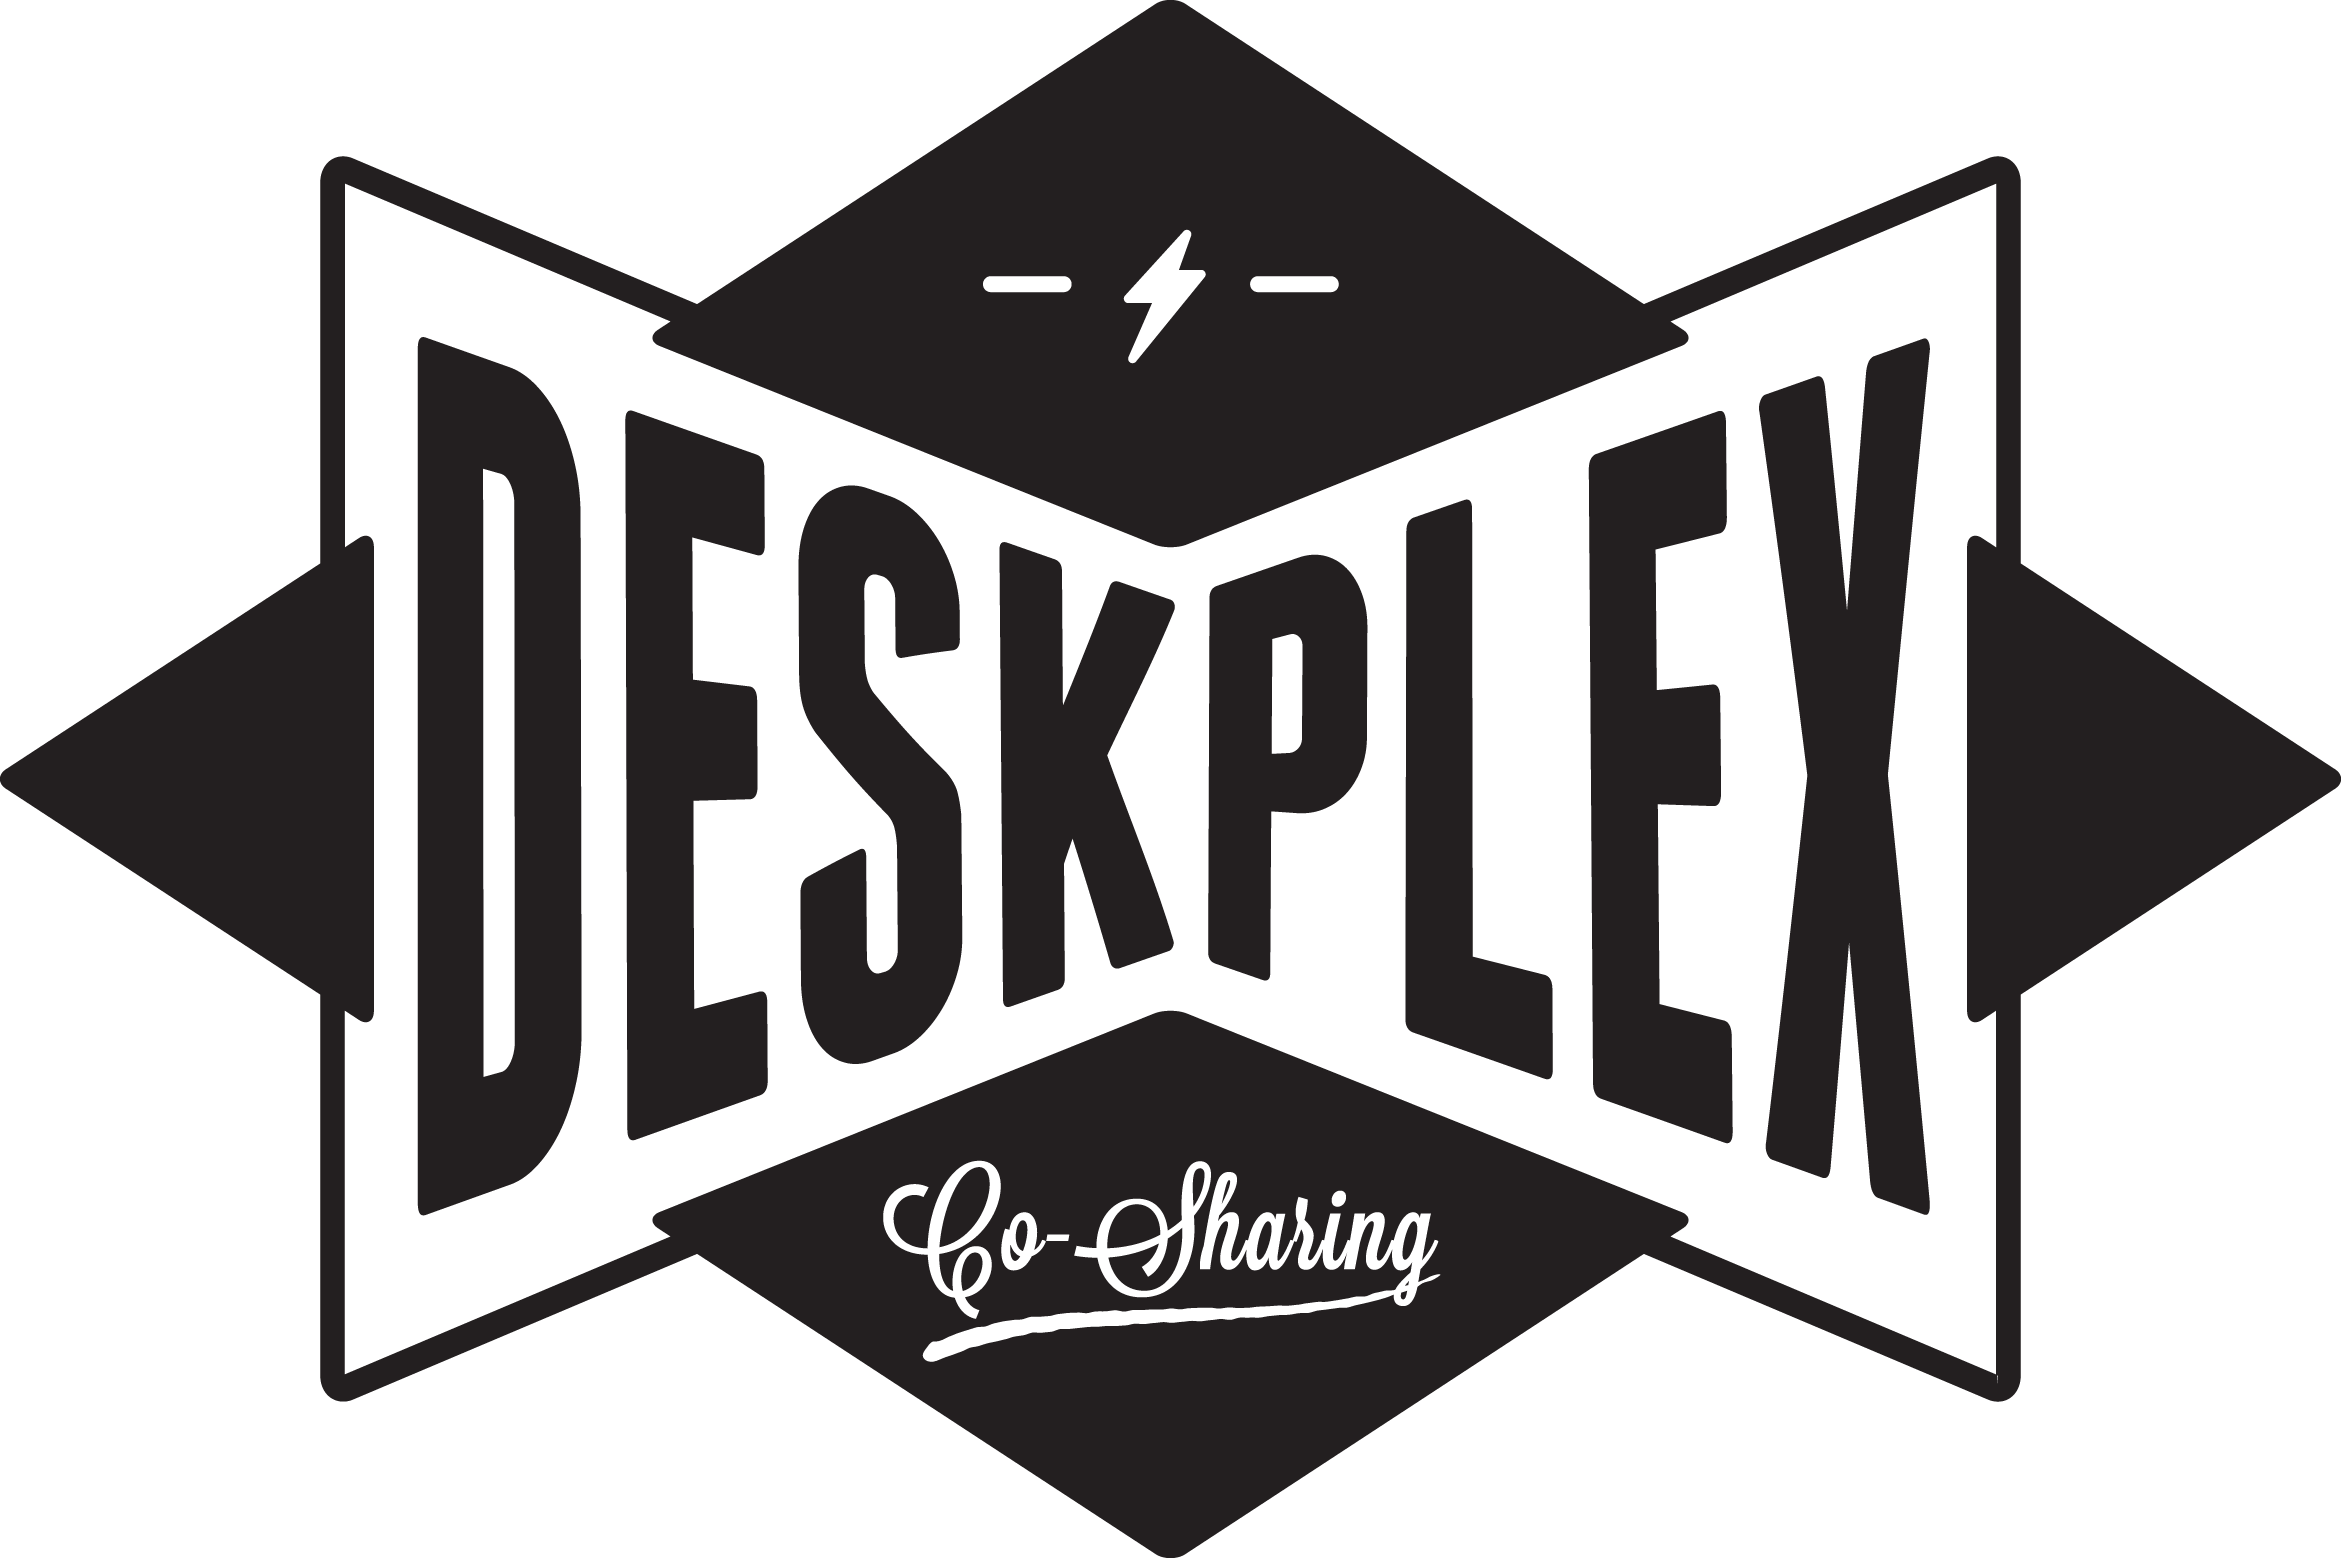 DeskPlex 5 Star Offices & Coworking